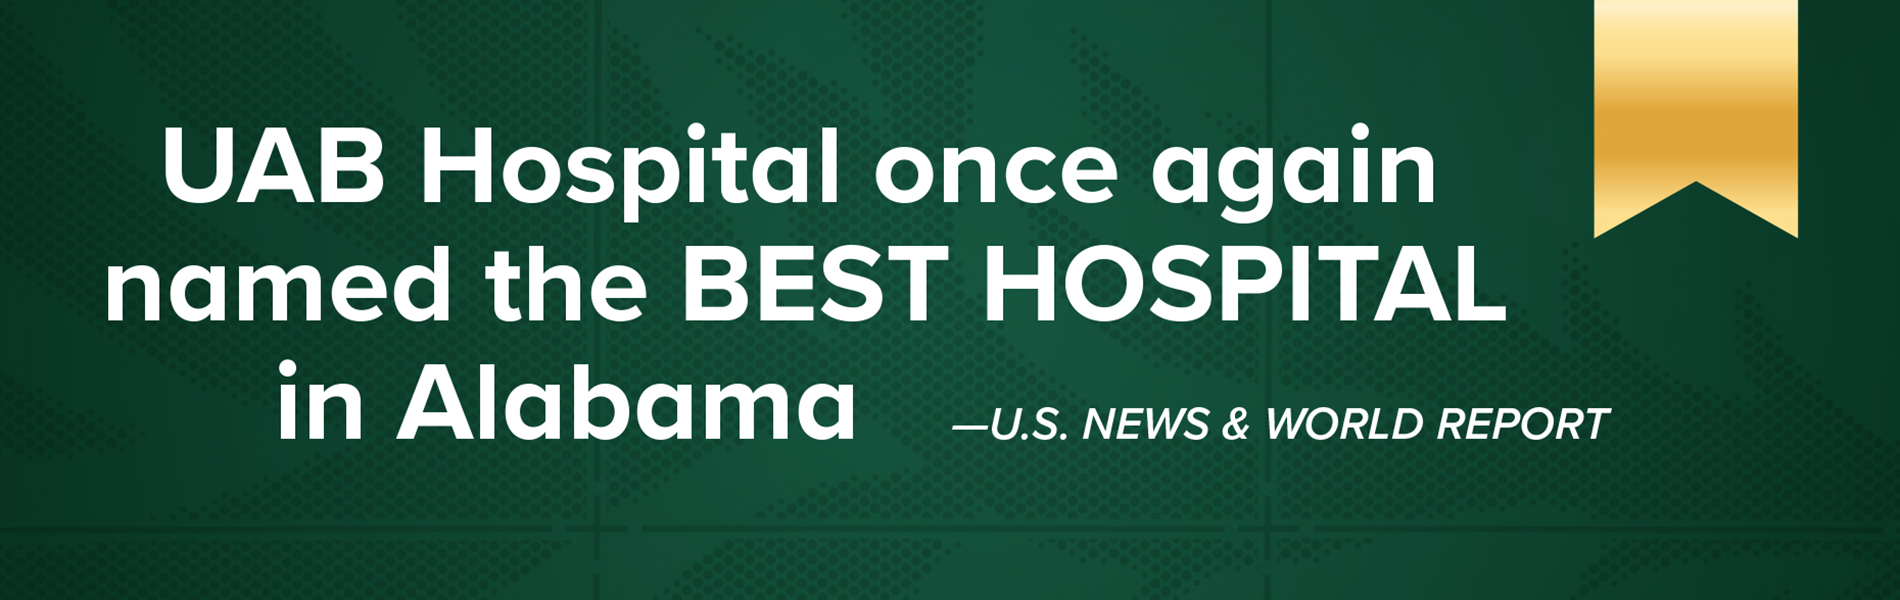 UAB Hospital named best hospital in Alabama